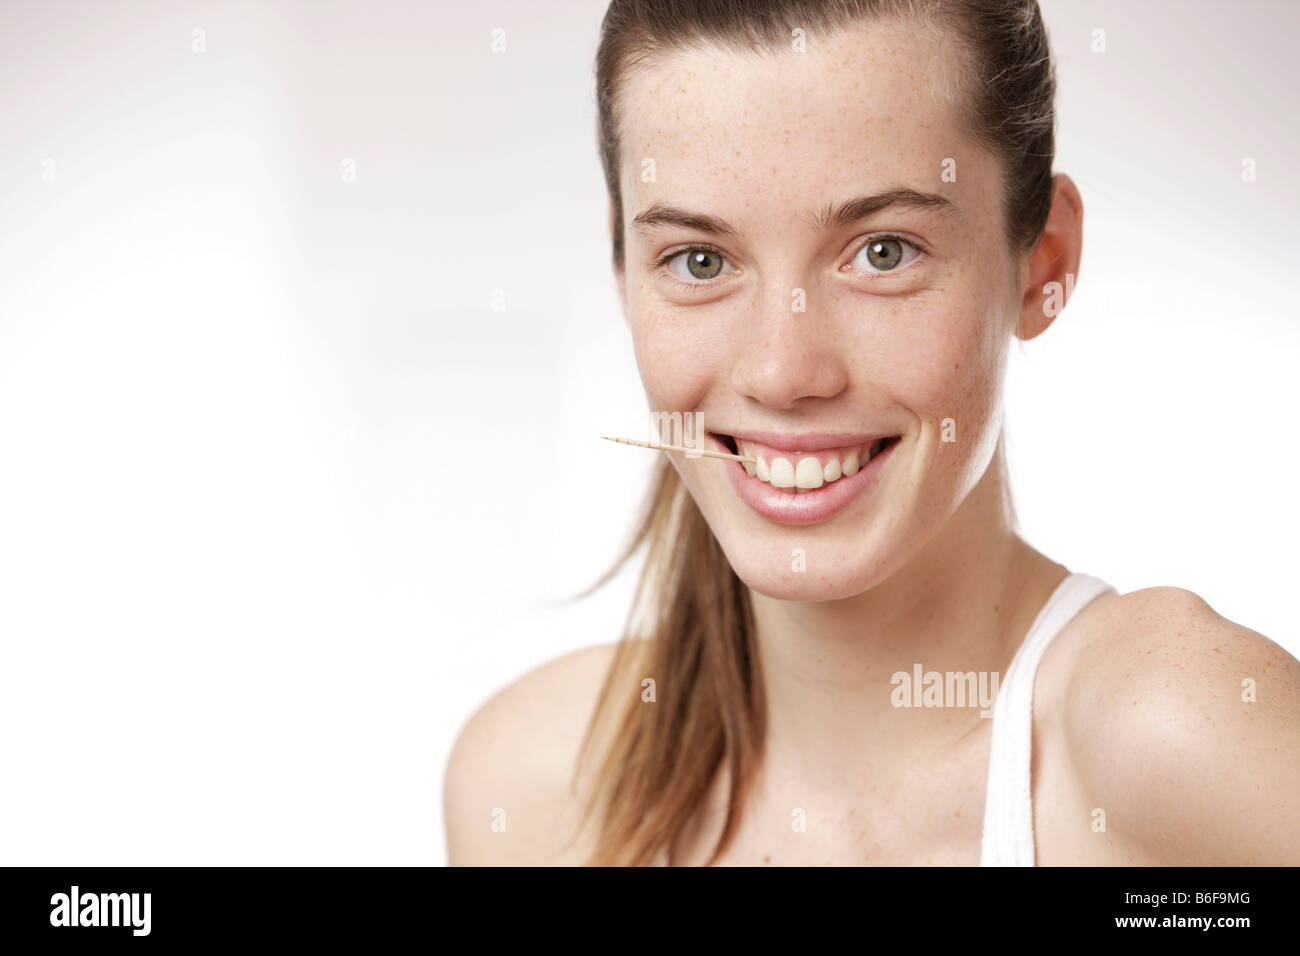 Teenager-Mädchen, Frau, mit einem Zahnstocher zwischen den Zähnen Stockfoto